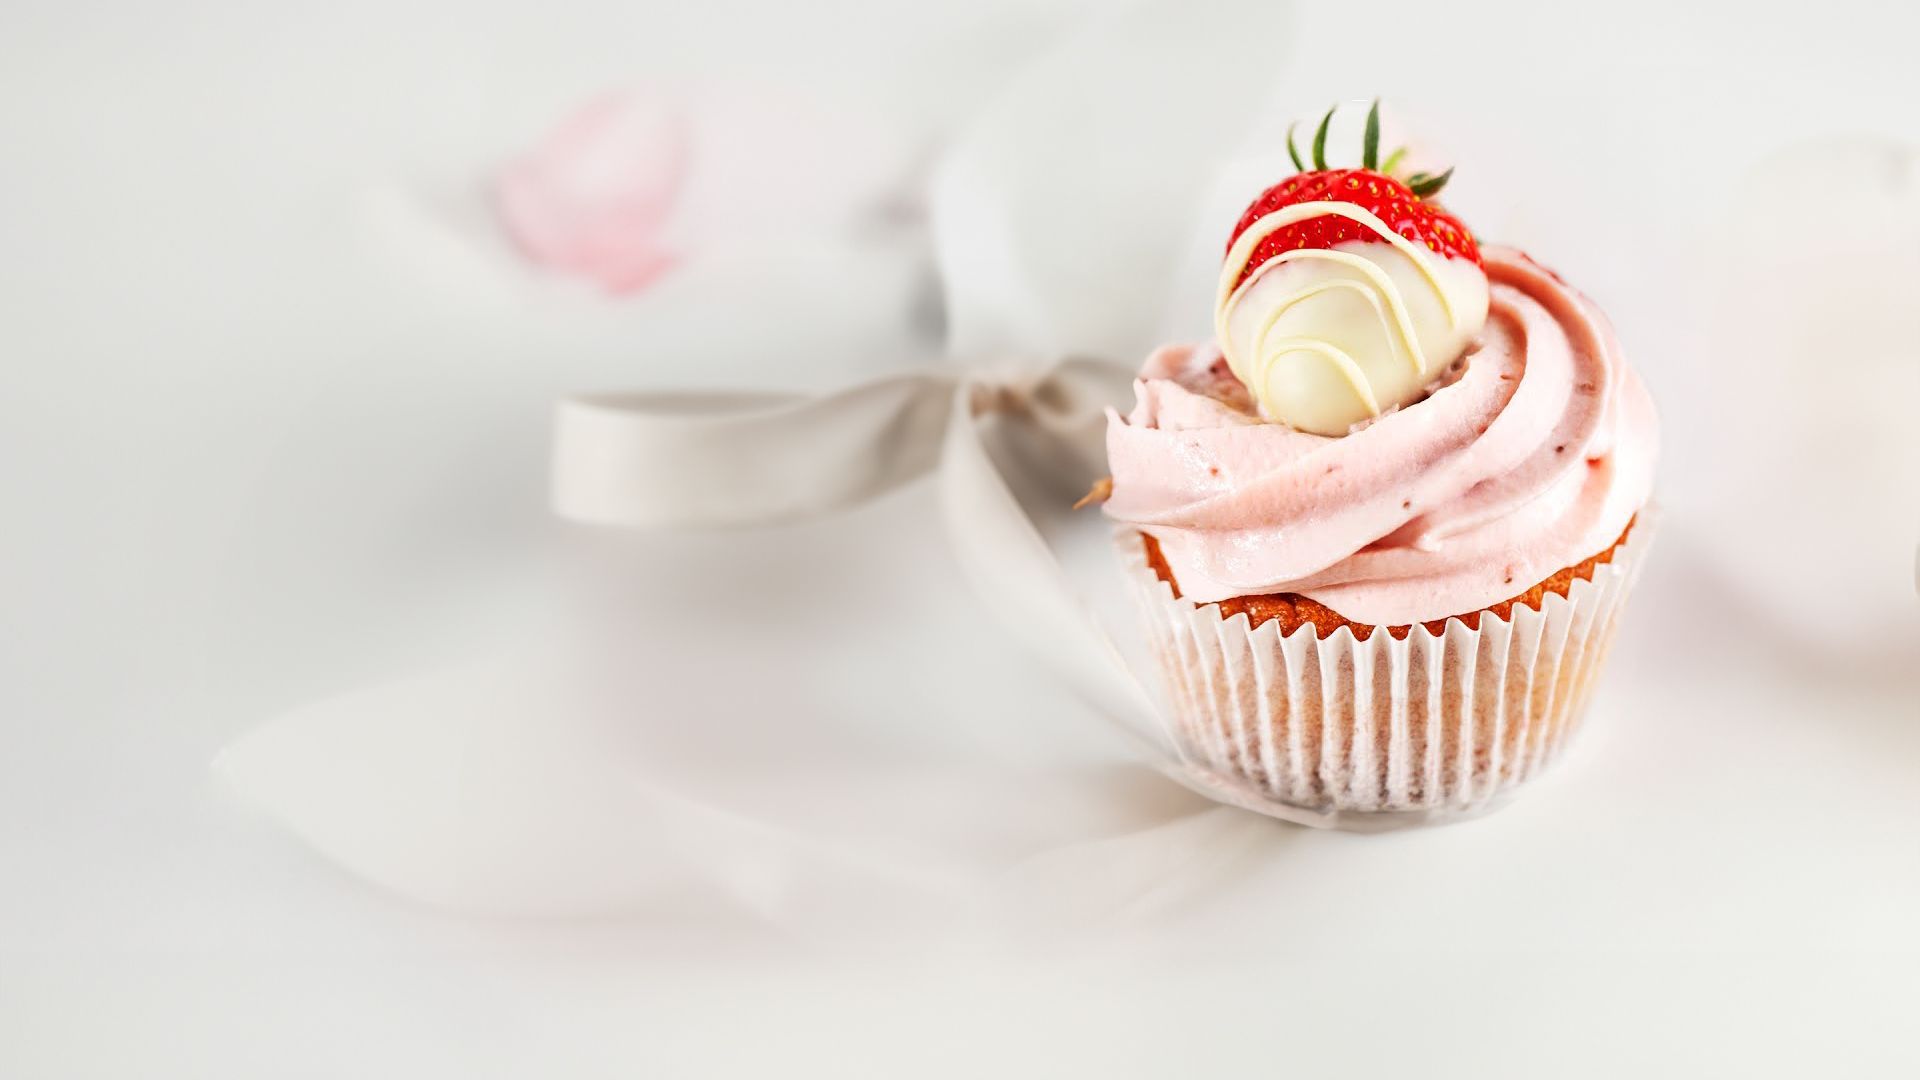 Erdbeer Cupcakes - einfaches Rezept mit fruchtiger Füllung (3 versch. Dekoration)